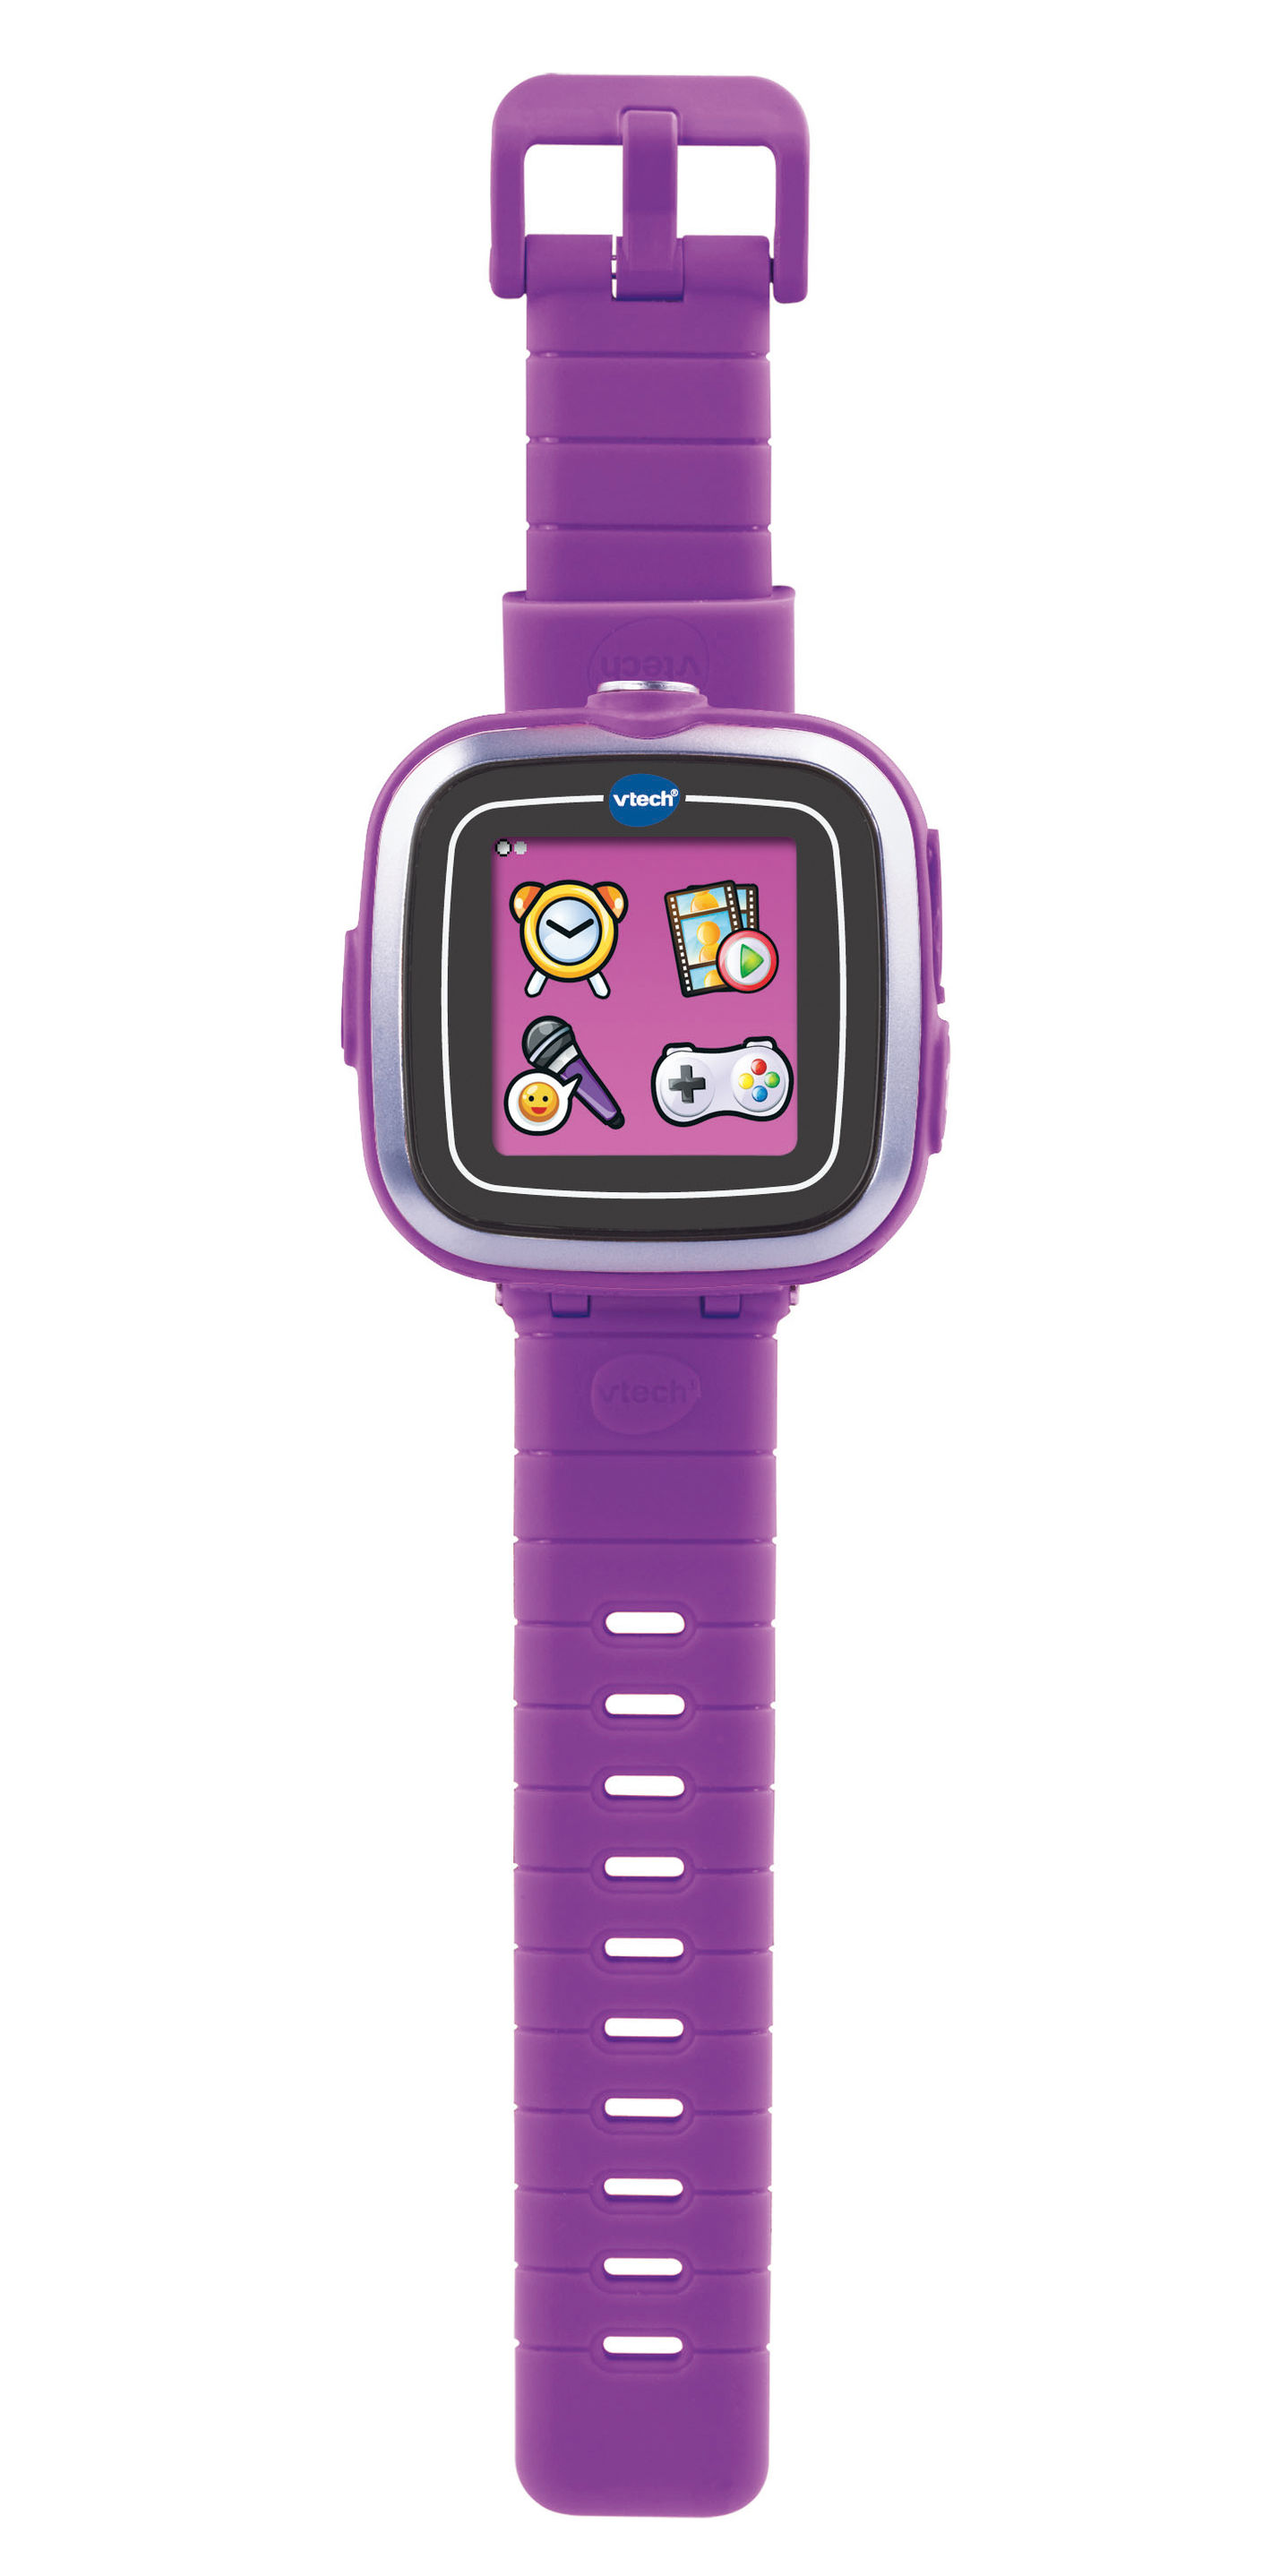 VTech Kidizoom Smart Watch lila jetzt bei Weltbild.de bestellen